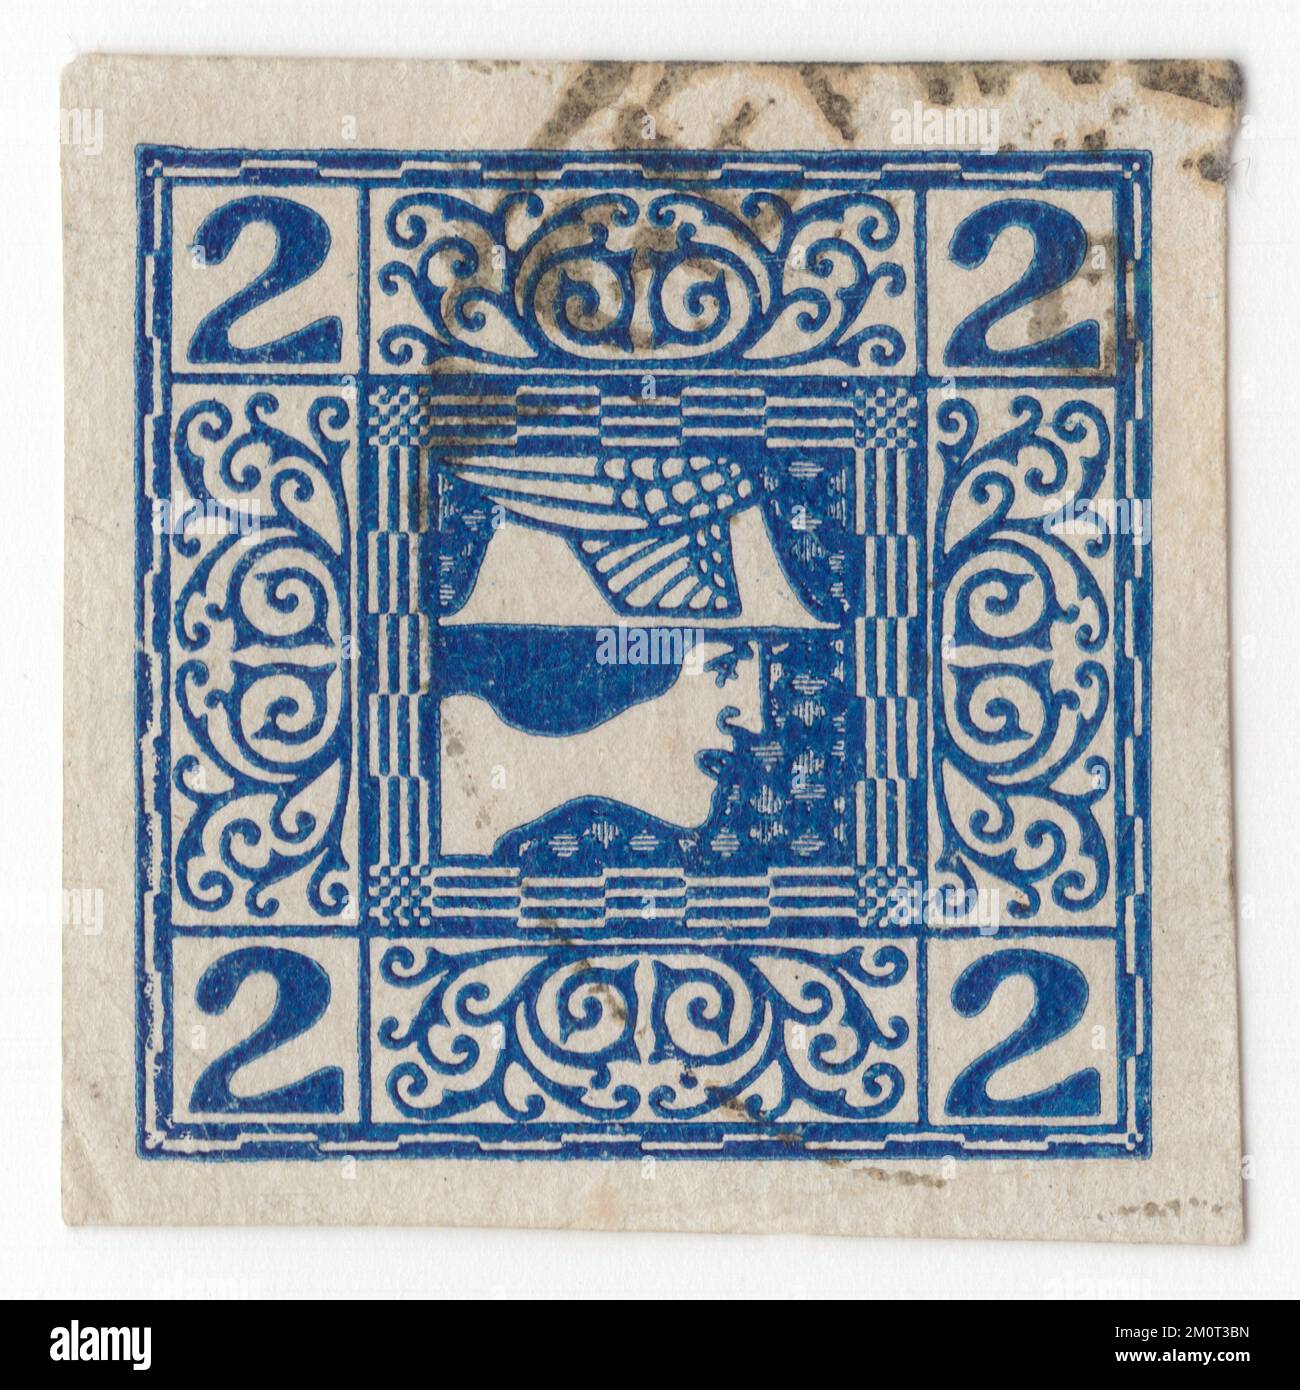 ÖSTERREICH - CIRCA 1908: Ursprünglich abgesagt österreichischer 2 heller dunkelblauer Zeitungsstempel. Stilisiertes Oberhaupt des gottes Merkur, Zahlen und geometrische Ornamente Stockfoto